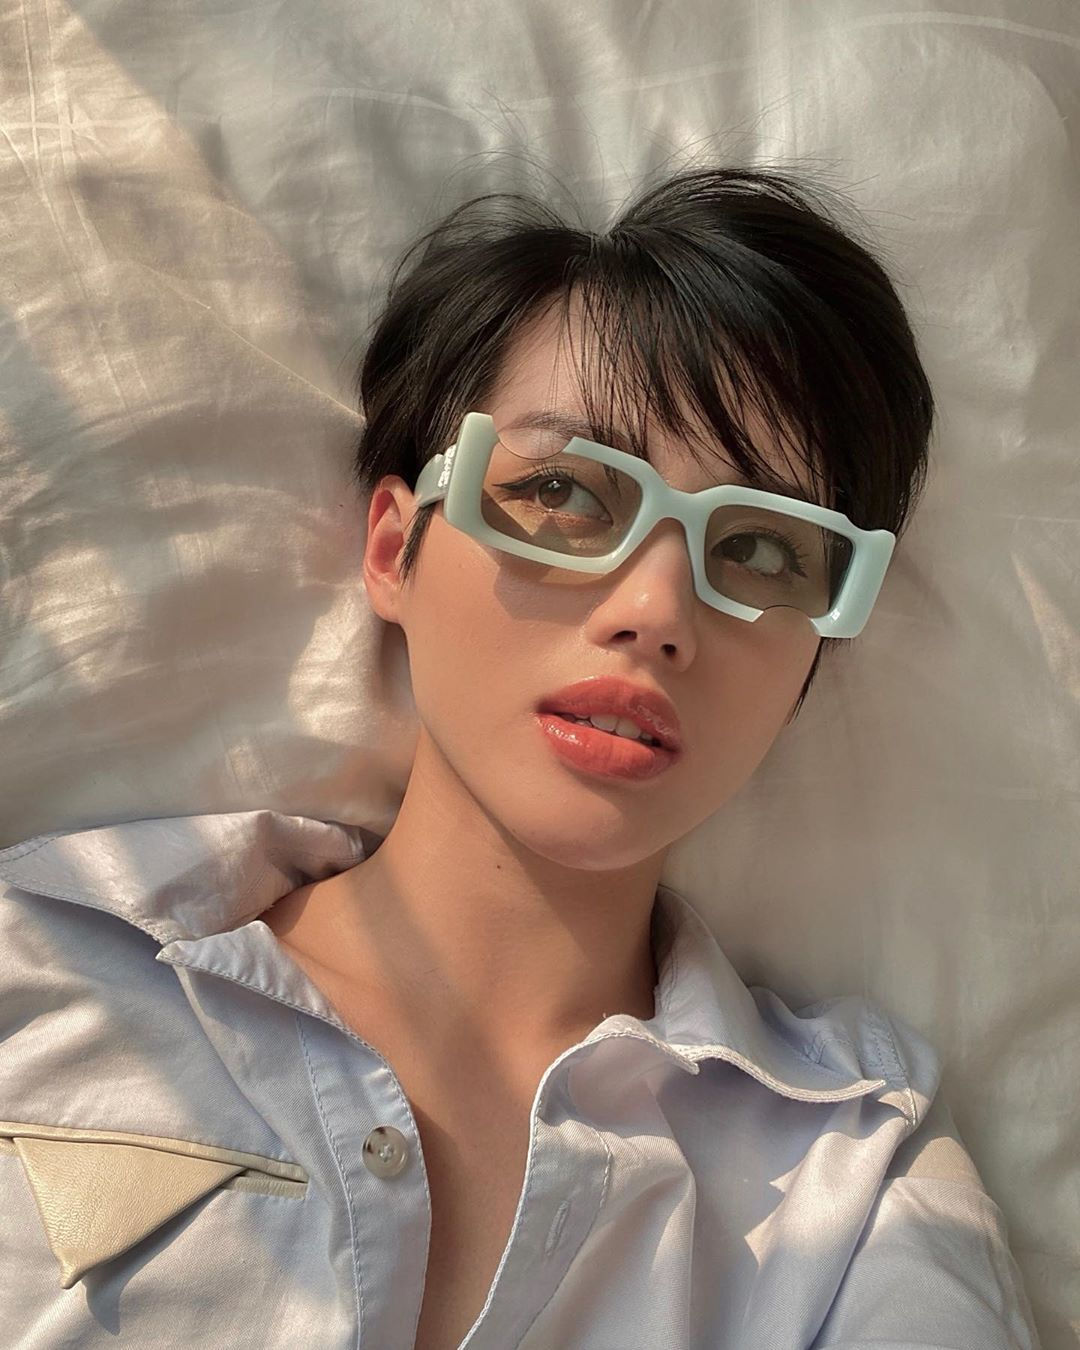 Nếu bạn đã chán những chiếc kính quen thuộc, hãy thử “đổi gió” với thiết kế kính độc đáo của Khánh Linh. (Ảnh: @klinhnd)